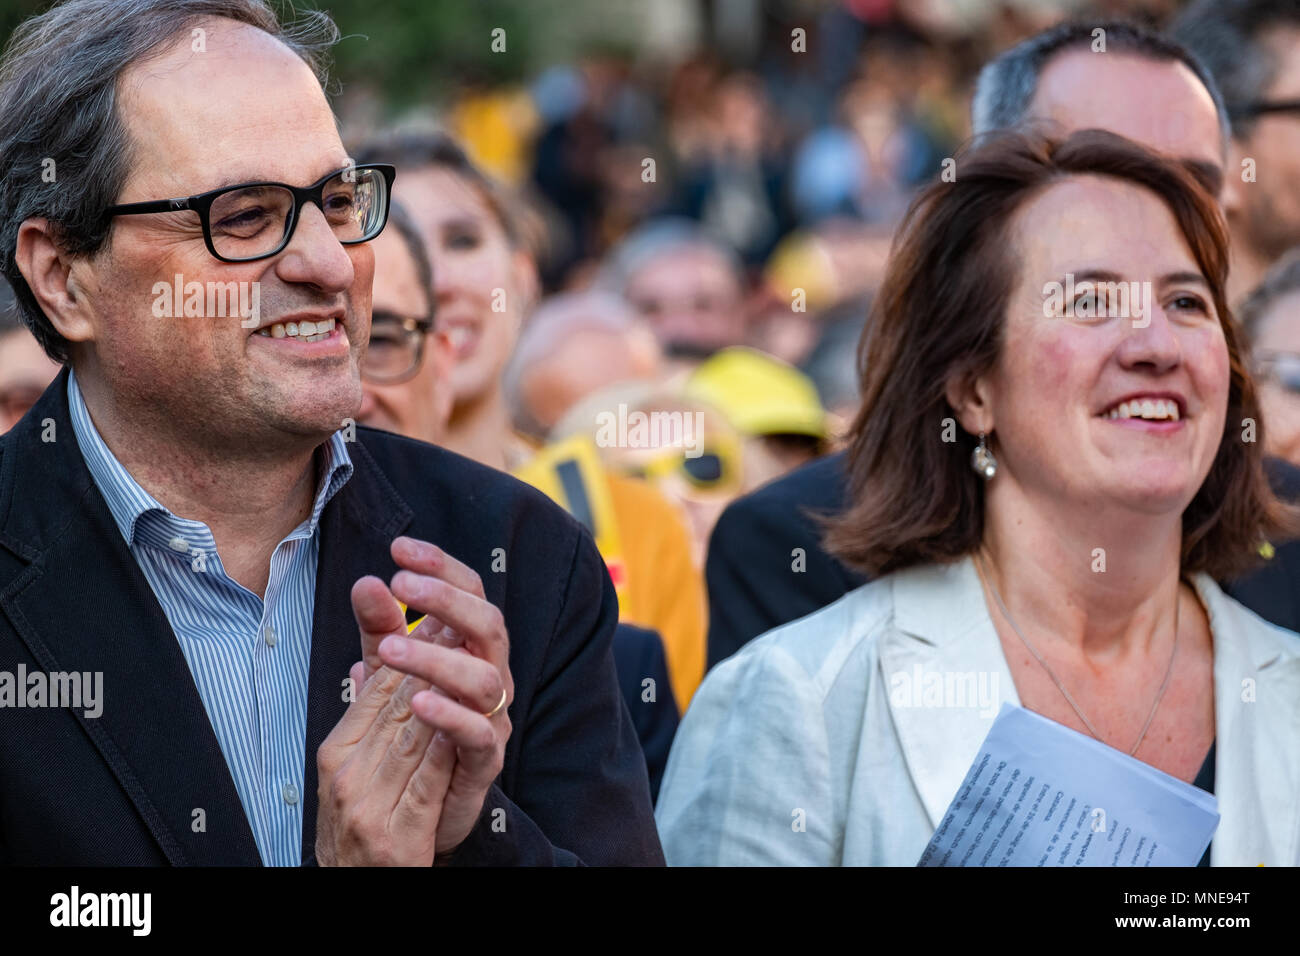 Präsident Qim Torra ist neben Elisenda Paluzier, Präsident des ANC gesehen. Akt des Protests die Freilassung der politischen Gefangenen Jordi Sanchez und Jordi Cuixart, die im Gefängnis für sieben Monate wurden zu beantragen. Es ist der Umstand, dass es der erste Akt in Katalonien Der Präsident-elect der Generalitat Qim Torra, die die Rallye teilgenommen hat. Stockfoto